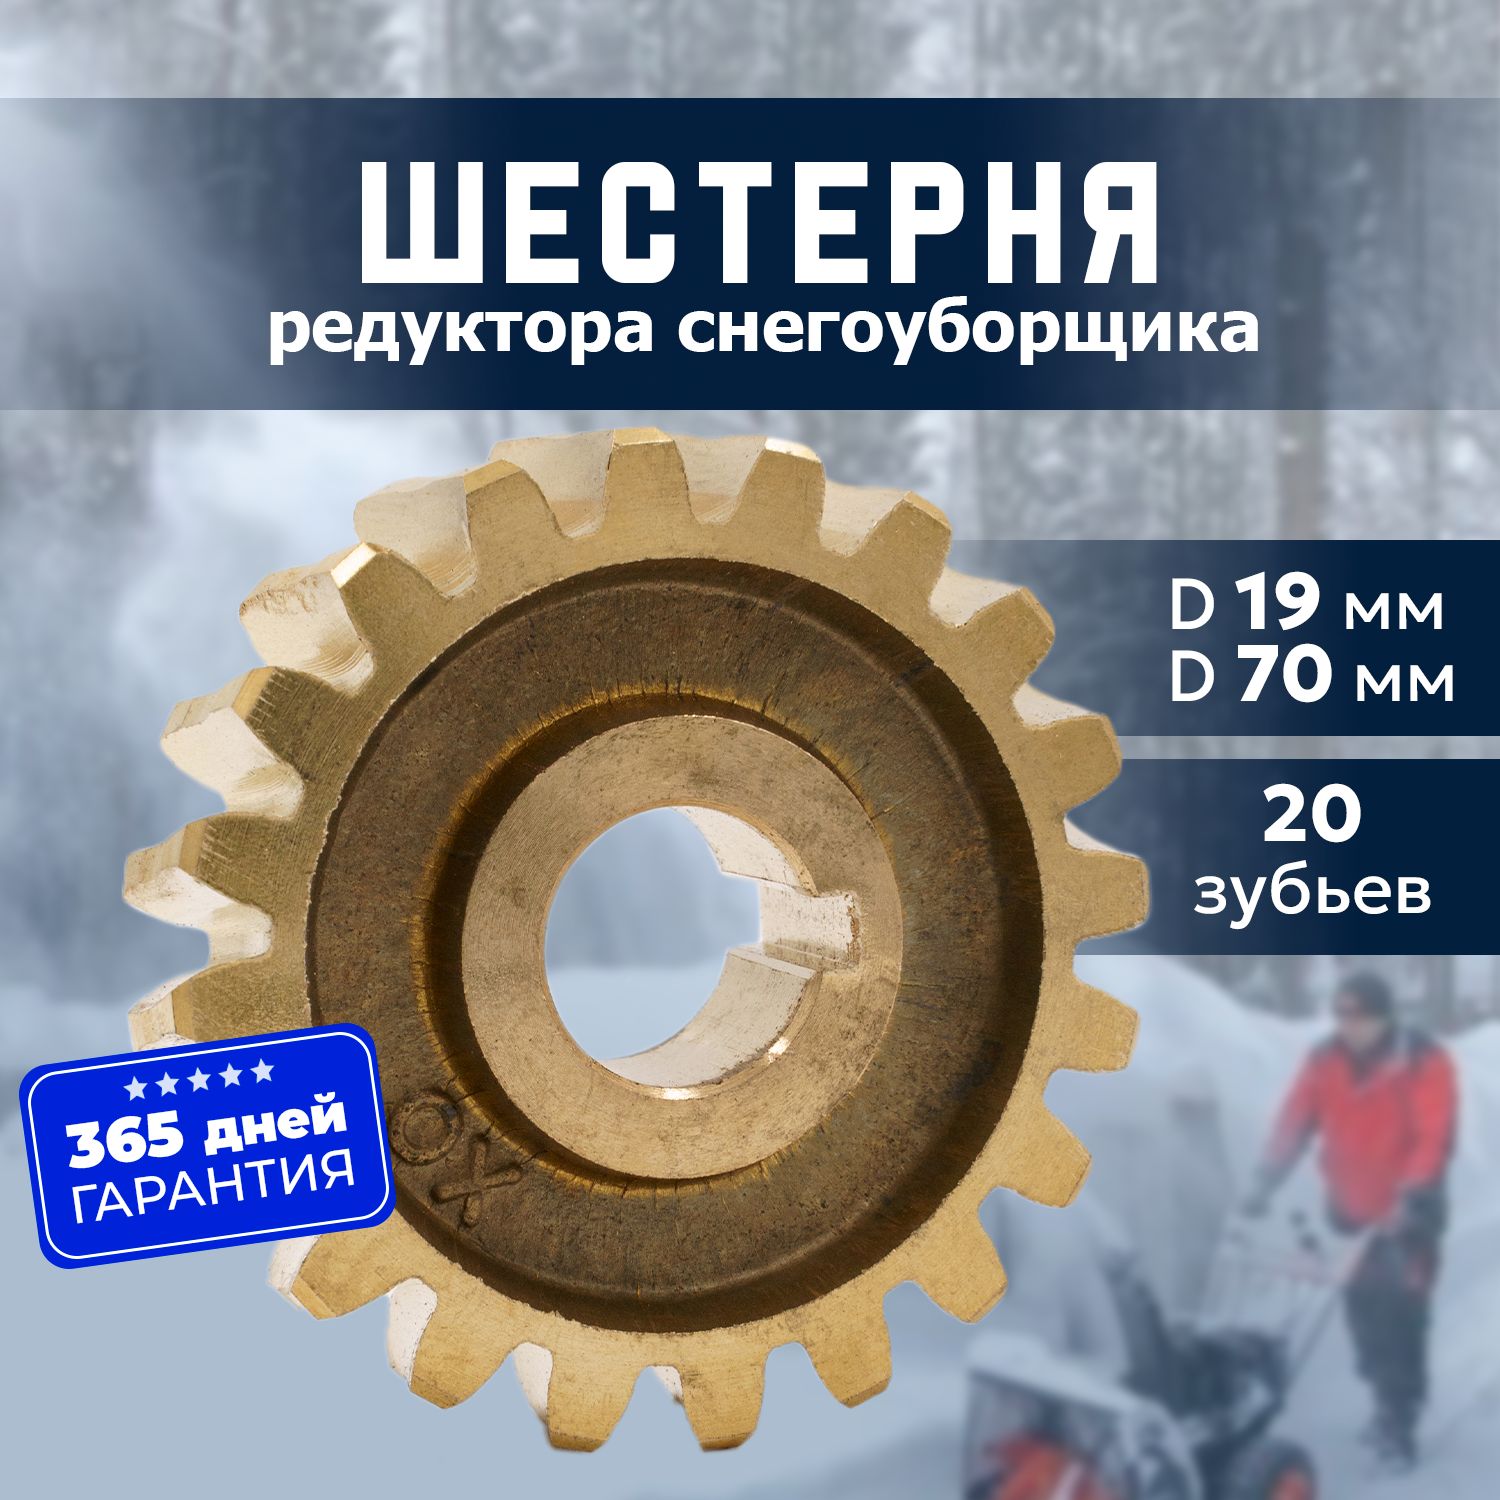 Купить снегоуборщики бензиновые в Казани, сравнить цены - 58 объявлений на Проминдекс